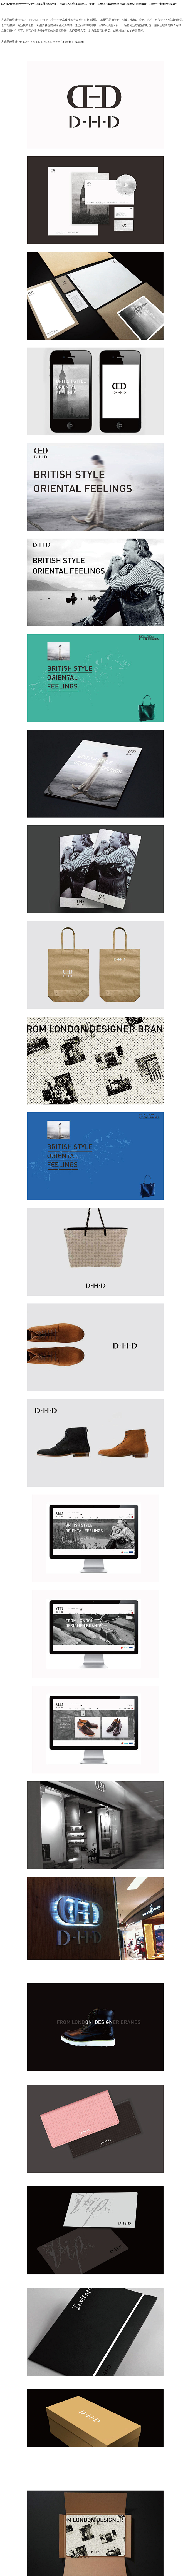 方式品牌设计——DHD鞋包品牌-设计青年